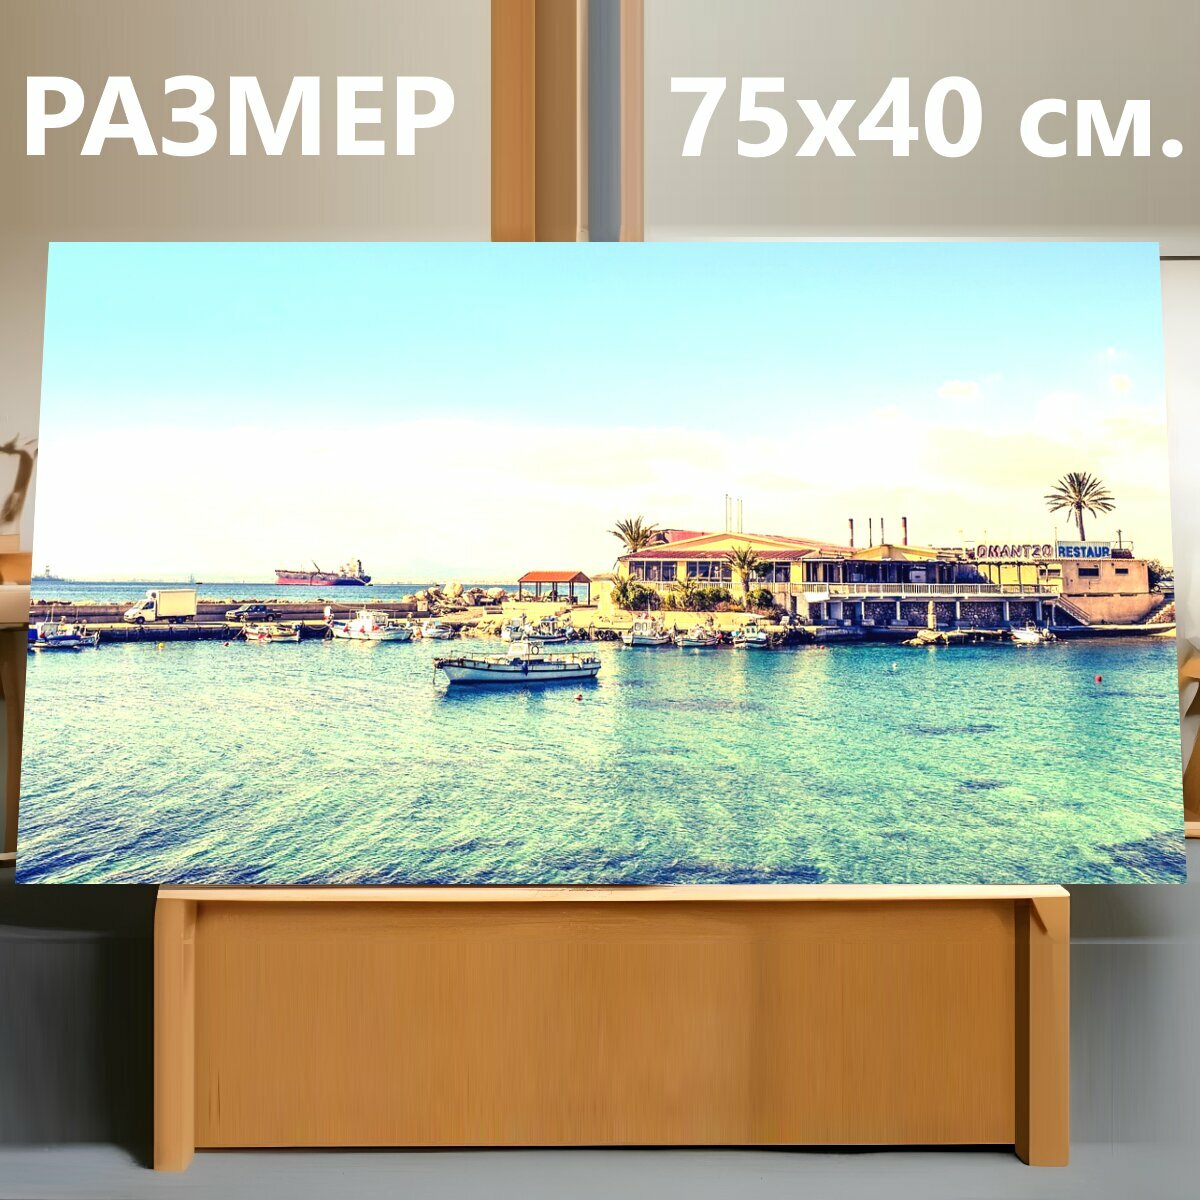 Картина на холсте "Приют для рыбалки, гавань, лодки" на подрамнике 75х40 см. для интерьера